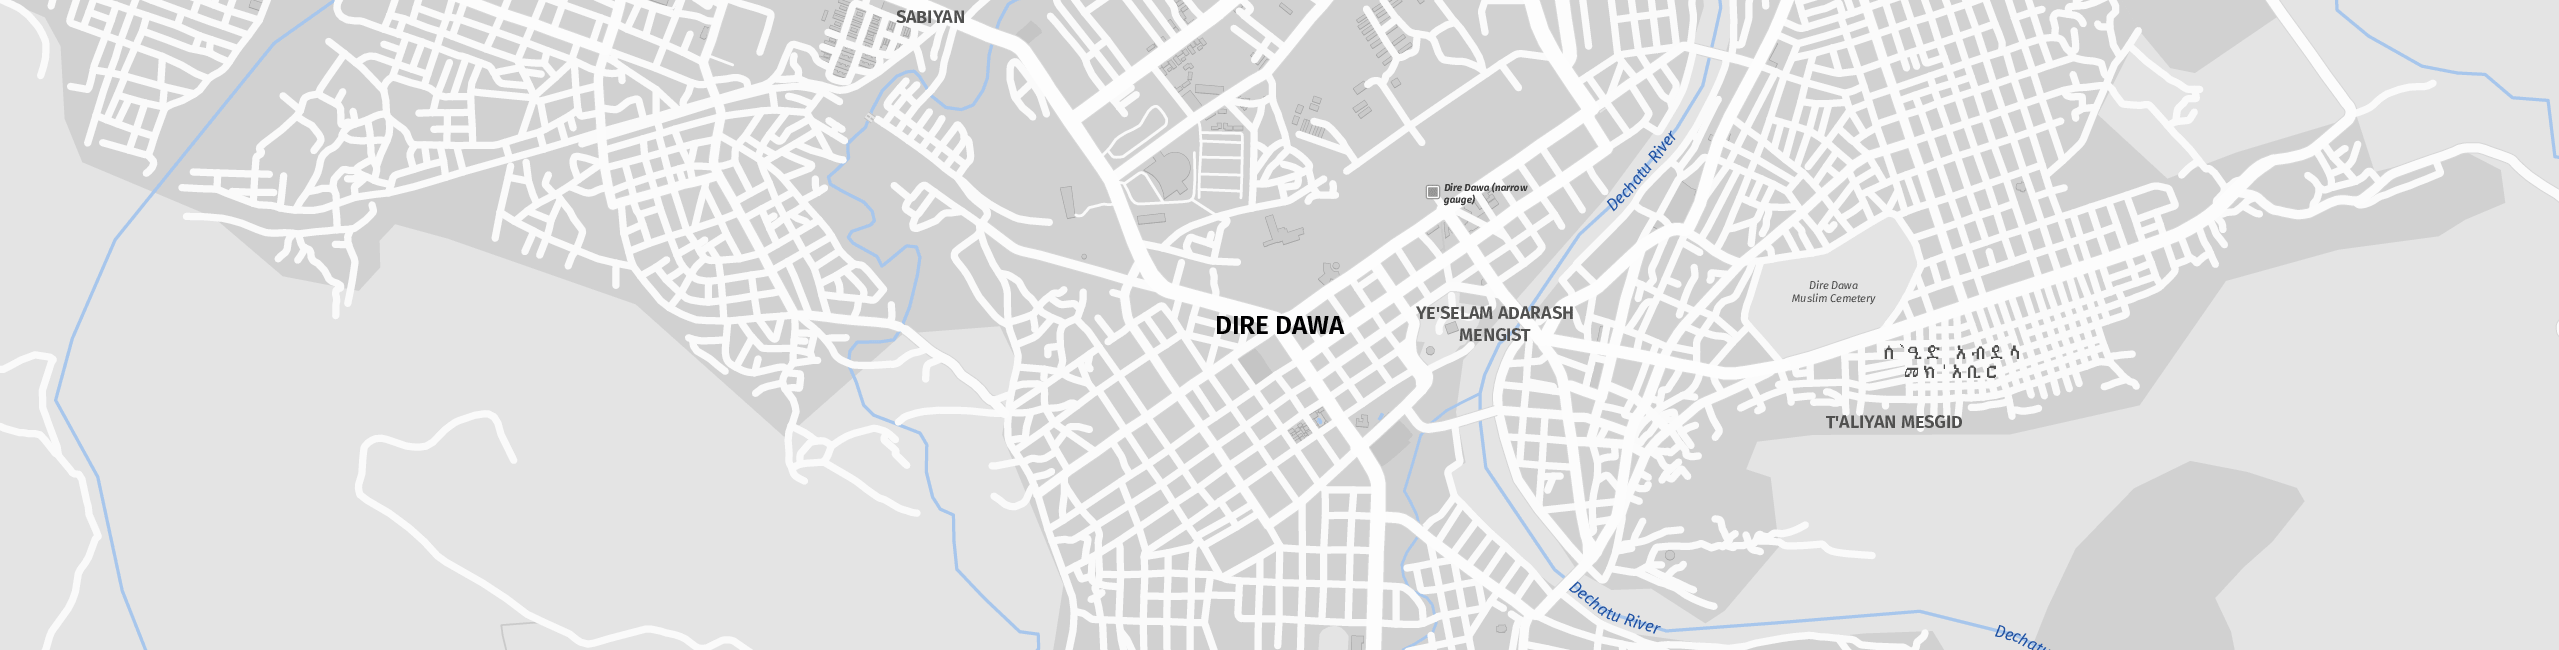 Stadtplan Dirē Dawa zum Downloaden.